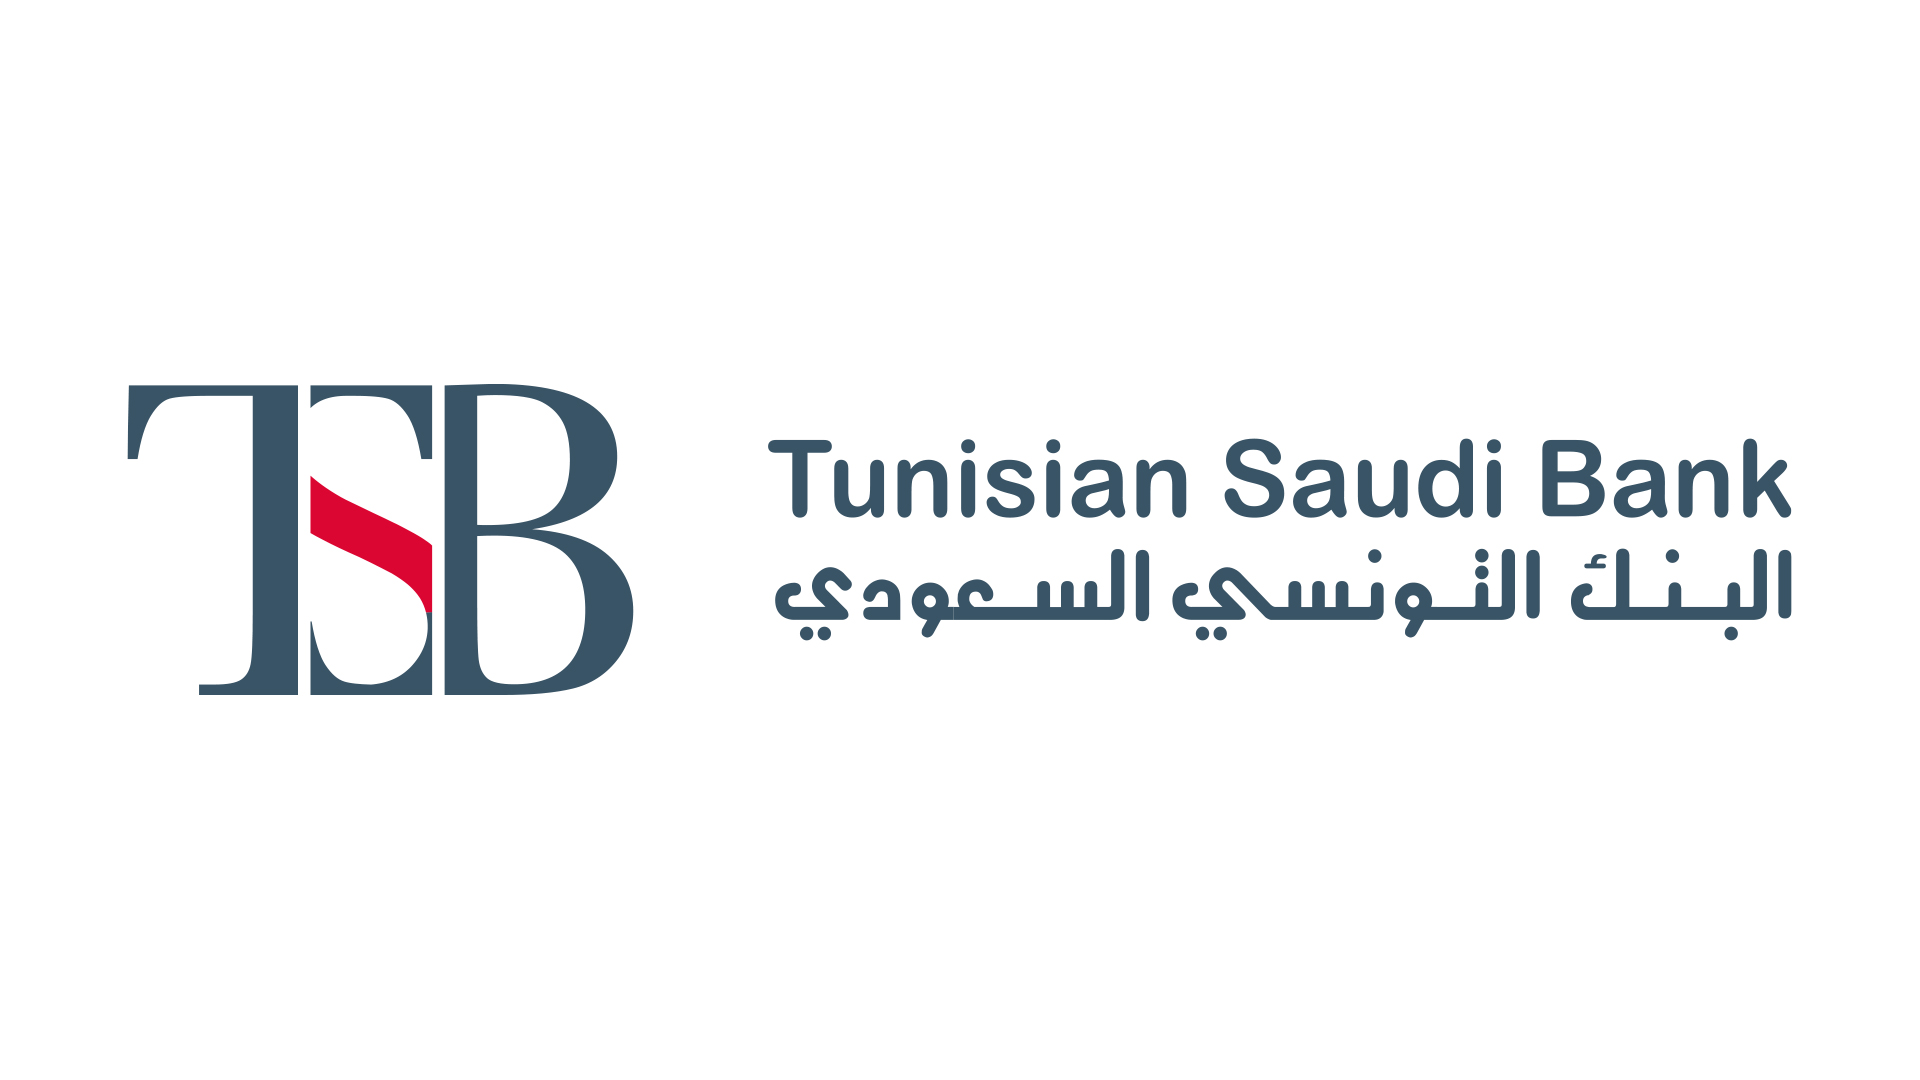 Tunisian Saudi Bank tsb